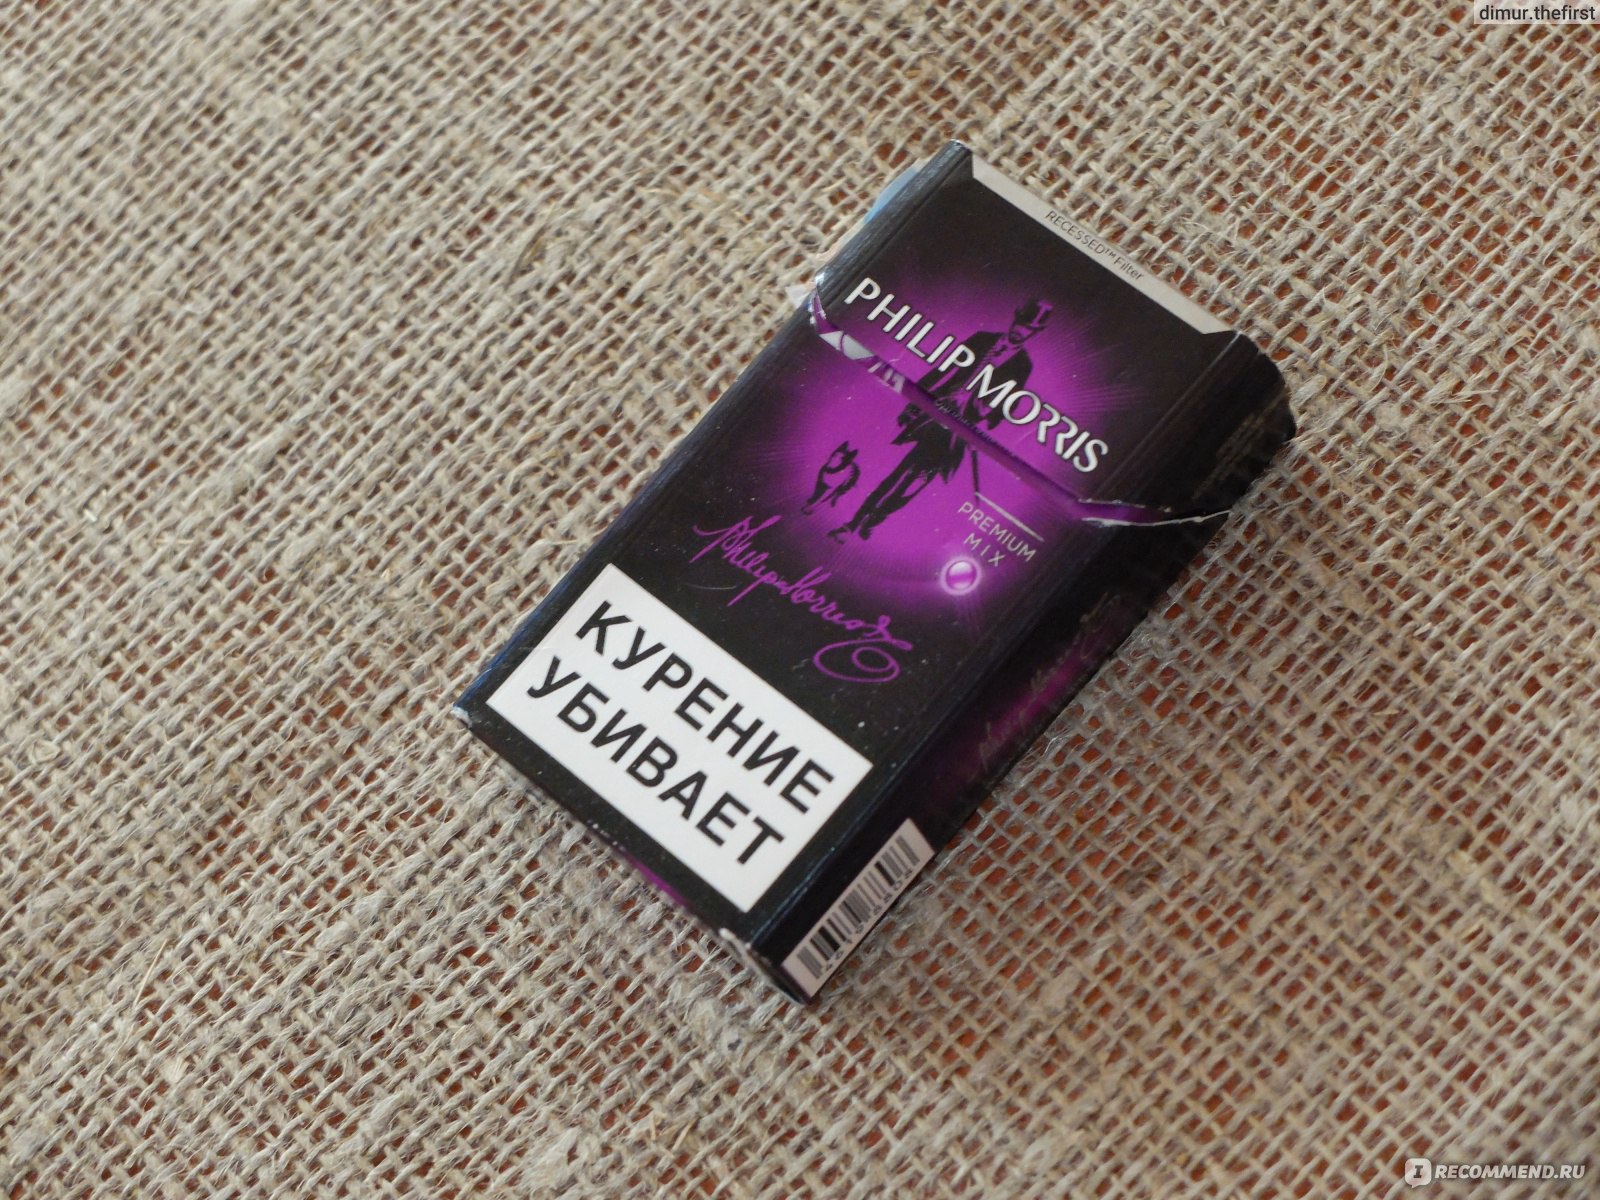 Филип моррис цена с кнопкой. Сигареты Филип Моррис с кнопкой фиолетовой. Сигареты Philip Morris с фиолетовой кнопкой.